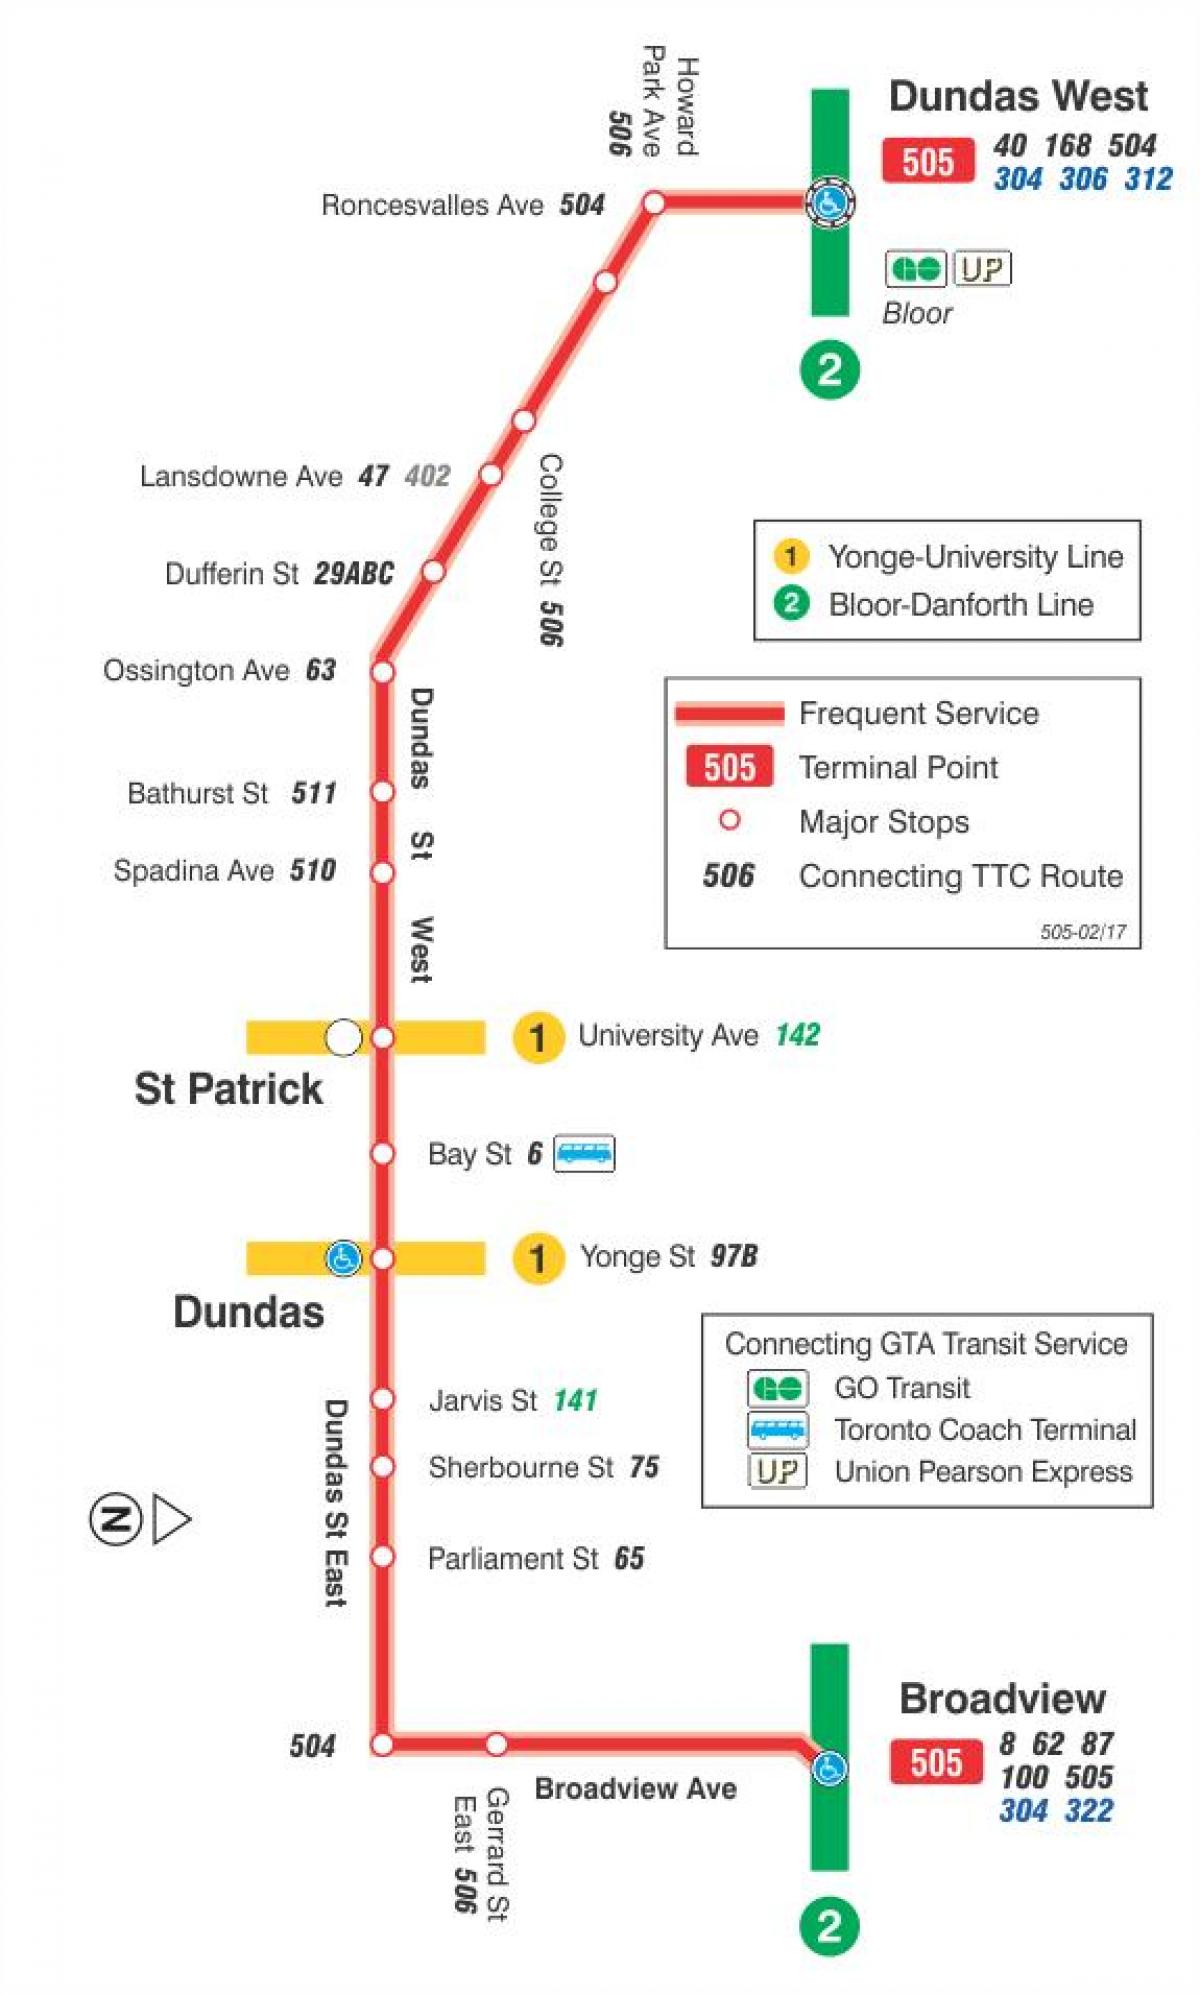 რუკა streetcar line 505 Dundas